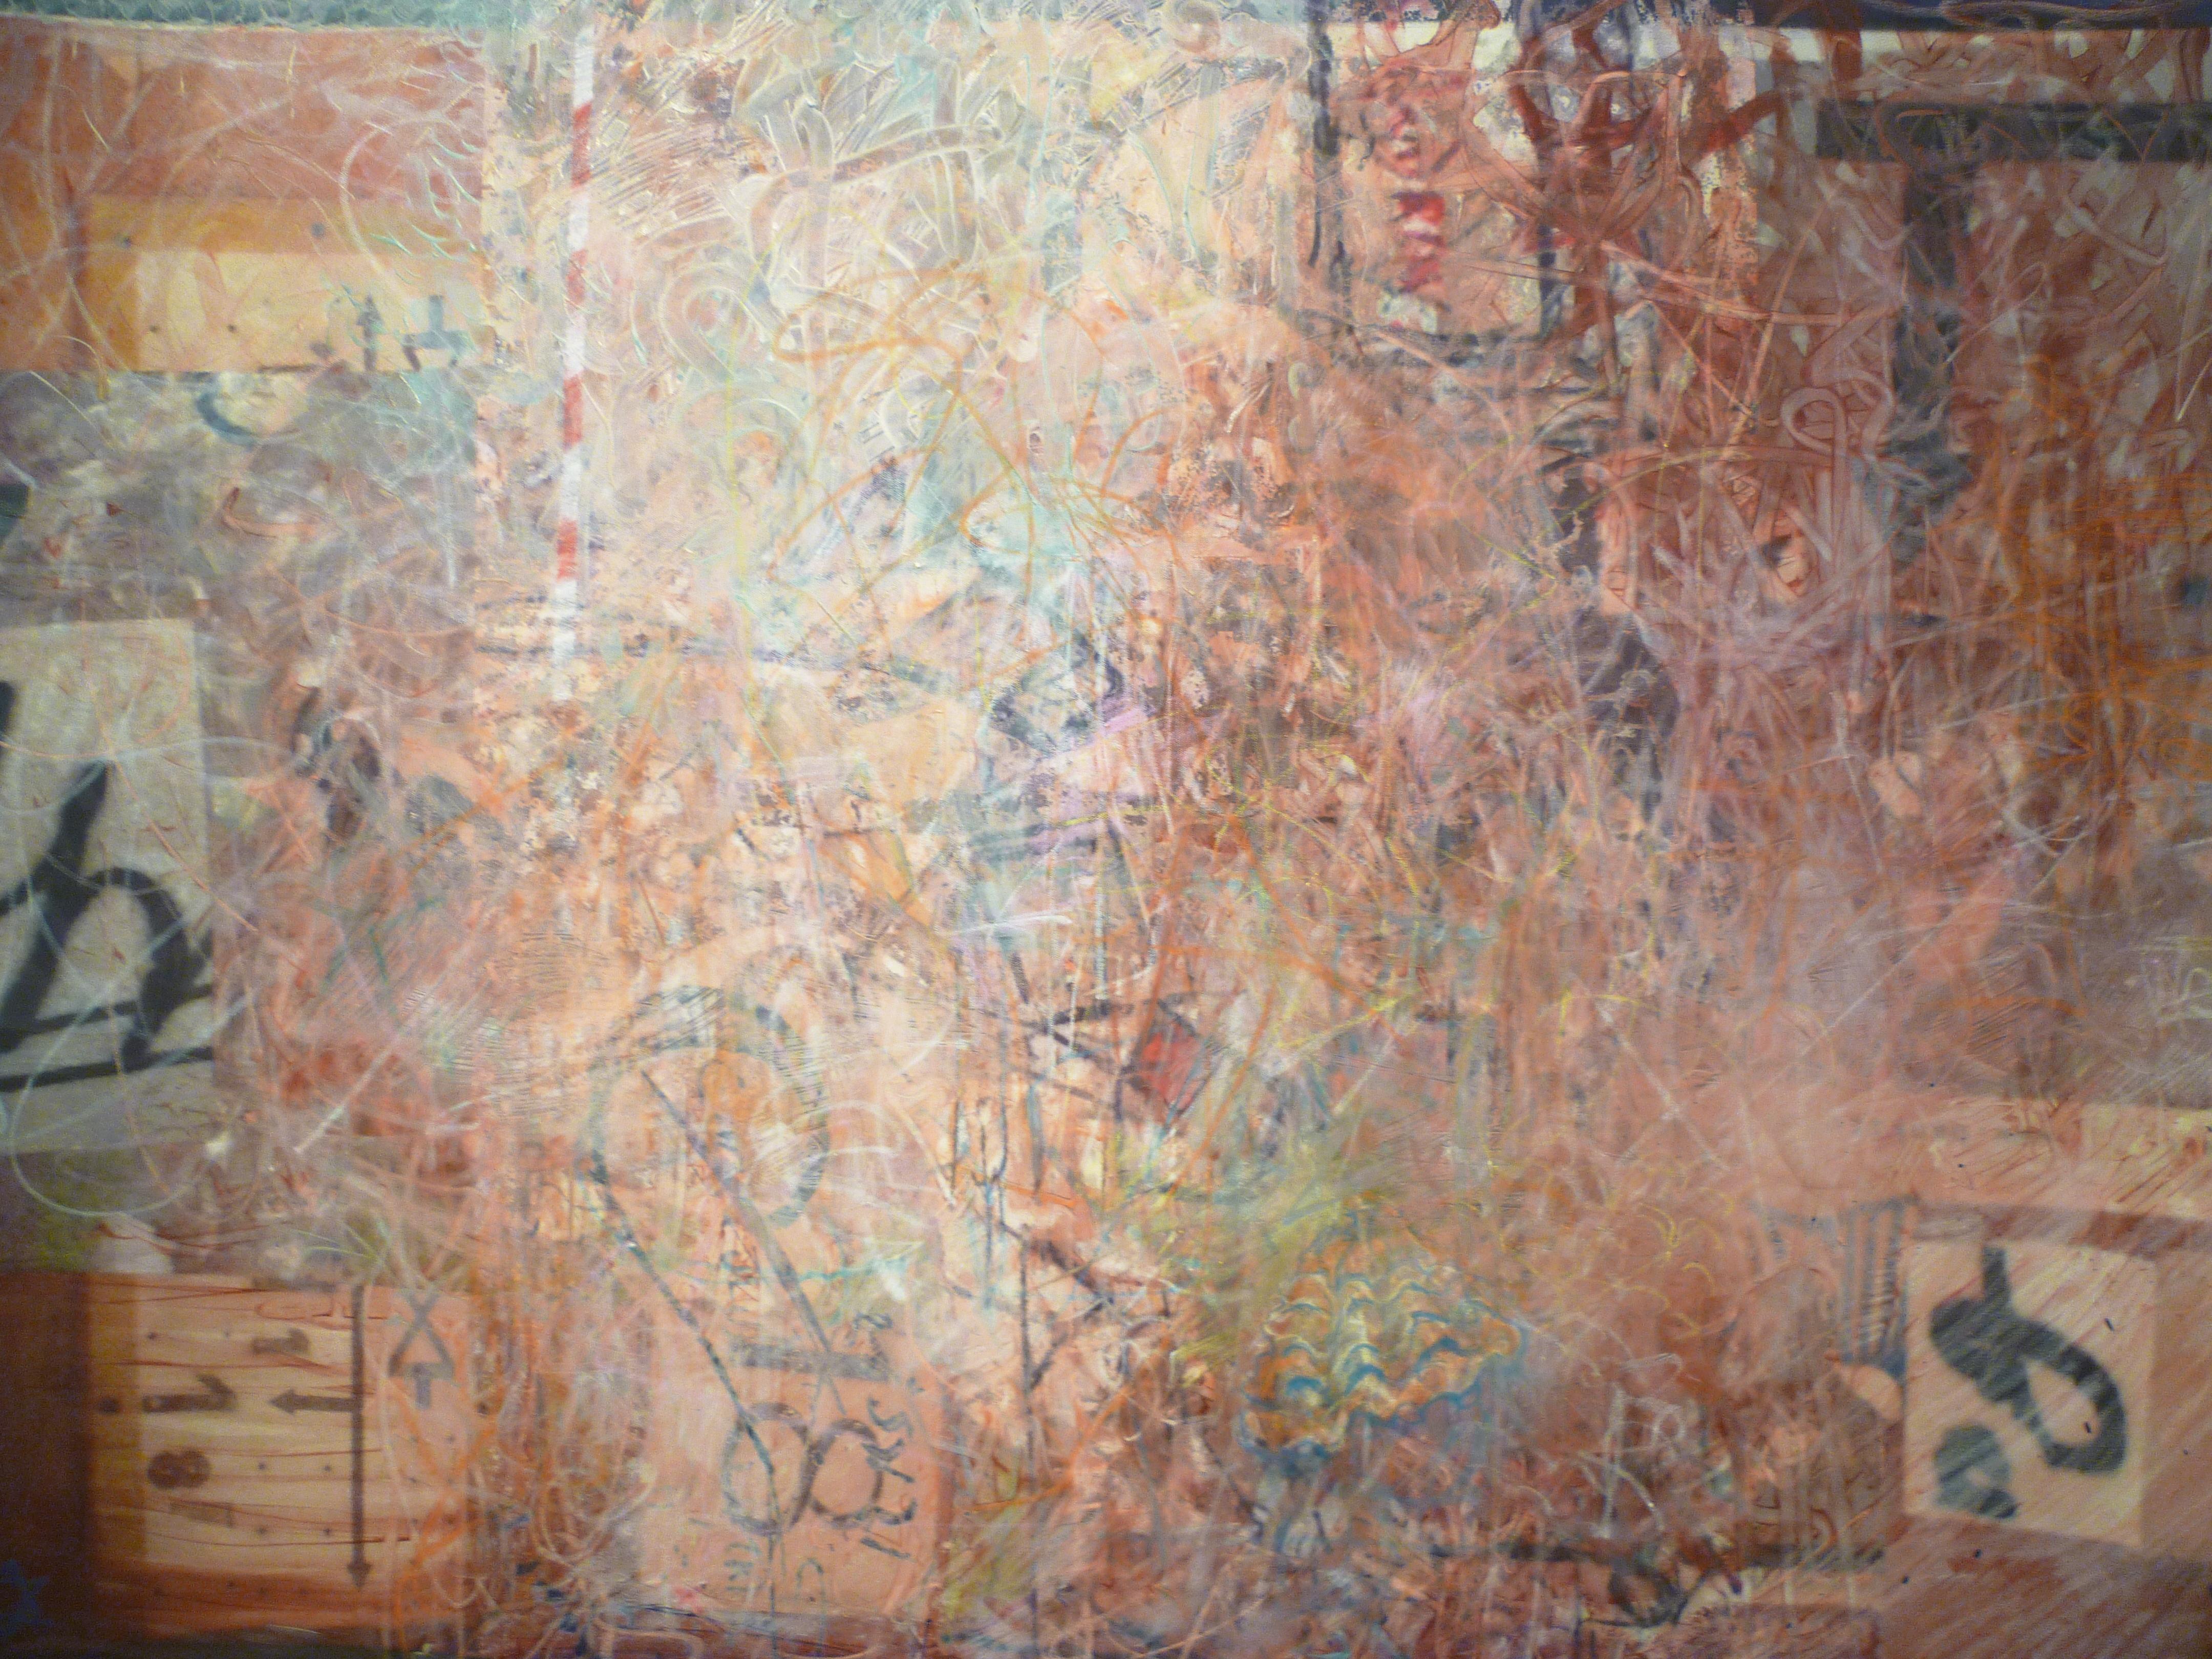 Tamara Negev – zeitgenössisches abstraktes Licht-Pastell-Gemälde in Mischtechnik auf Leinwand